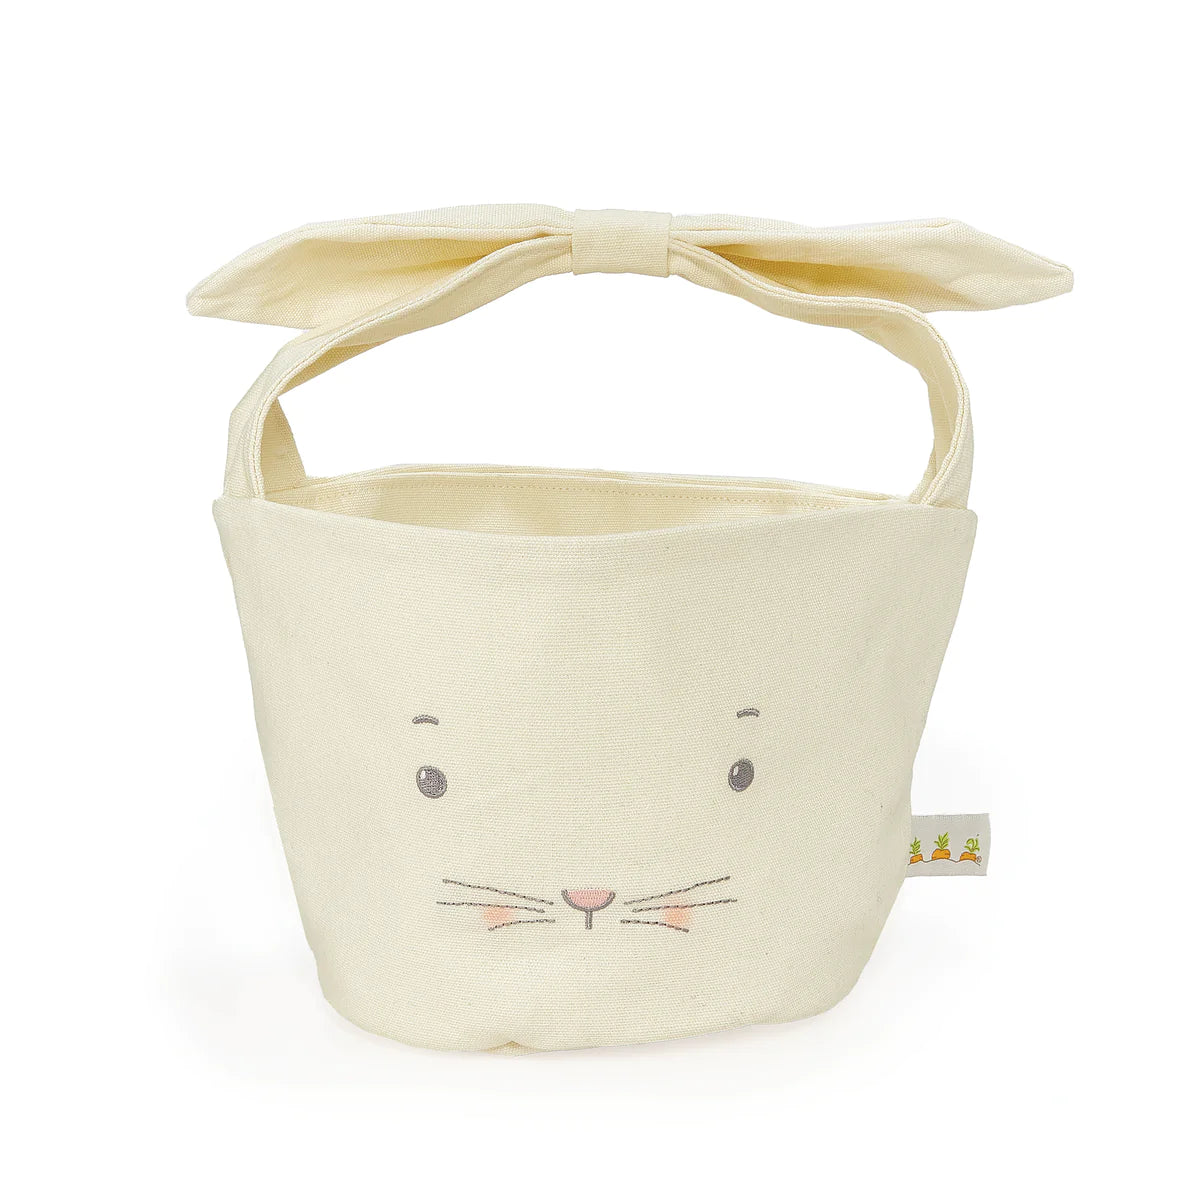 Bun Bun Bunny Basket in Cream